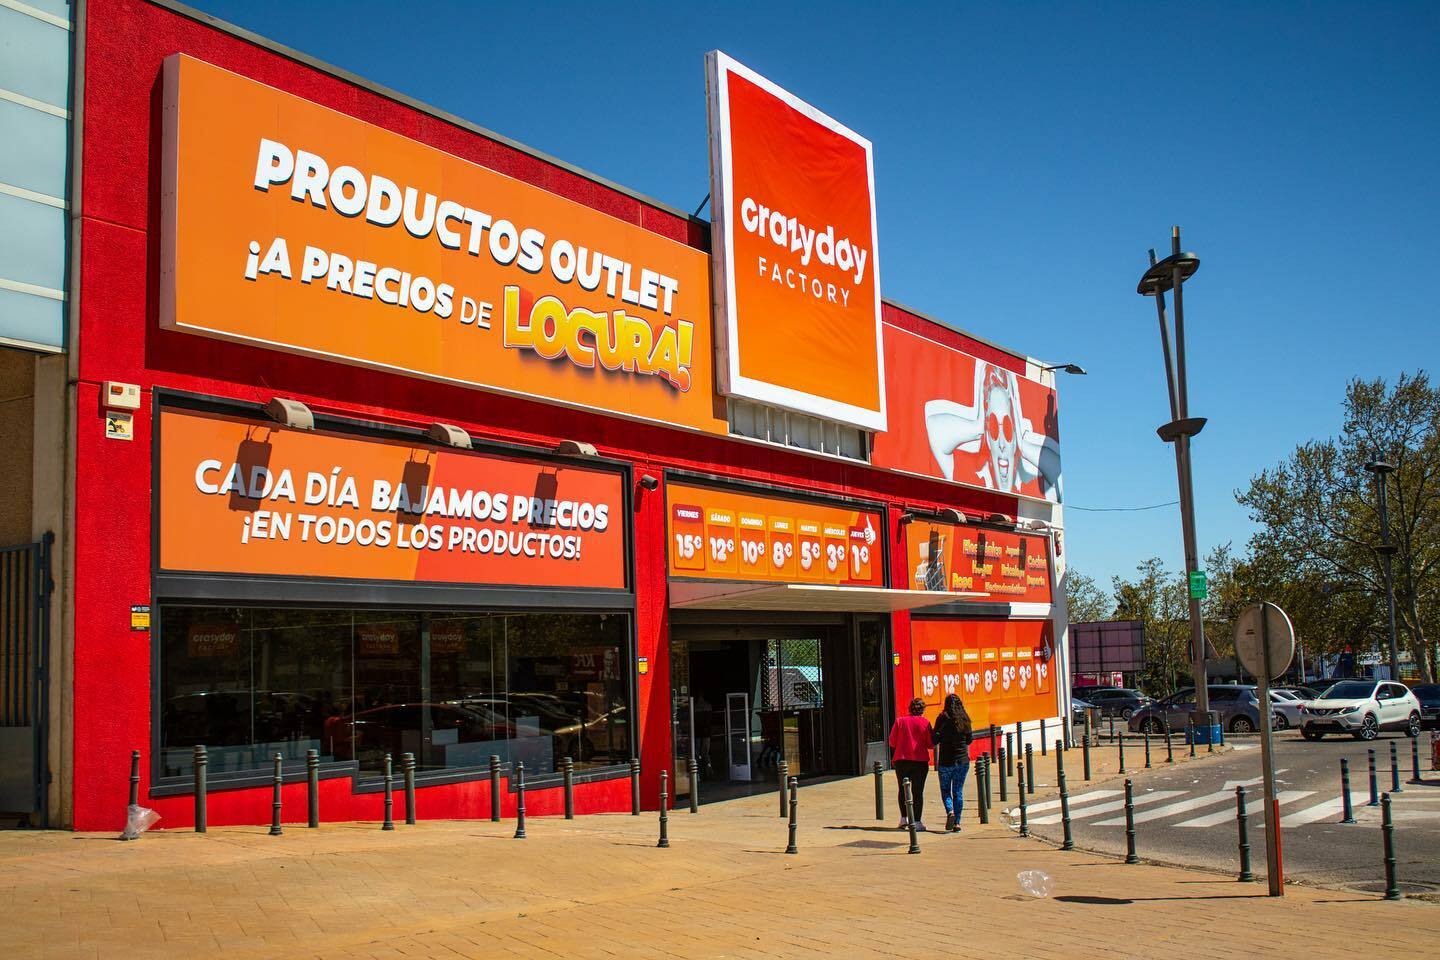 OUTLET OFERTAS MADRID  Precios locos: los productos de esta tienda de  Madrid cuestan menos de 1 euro